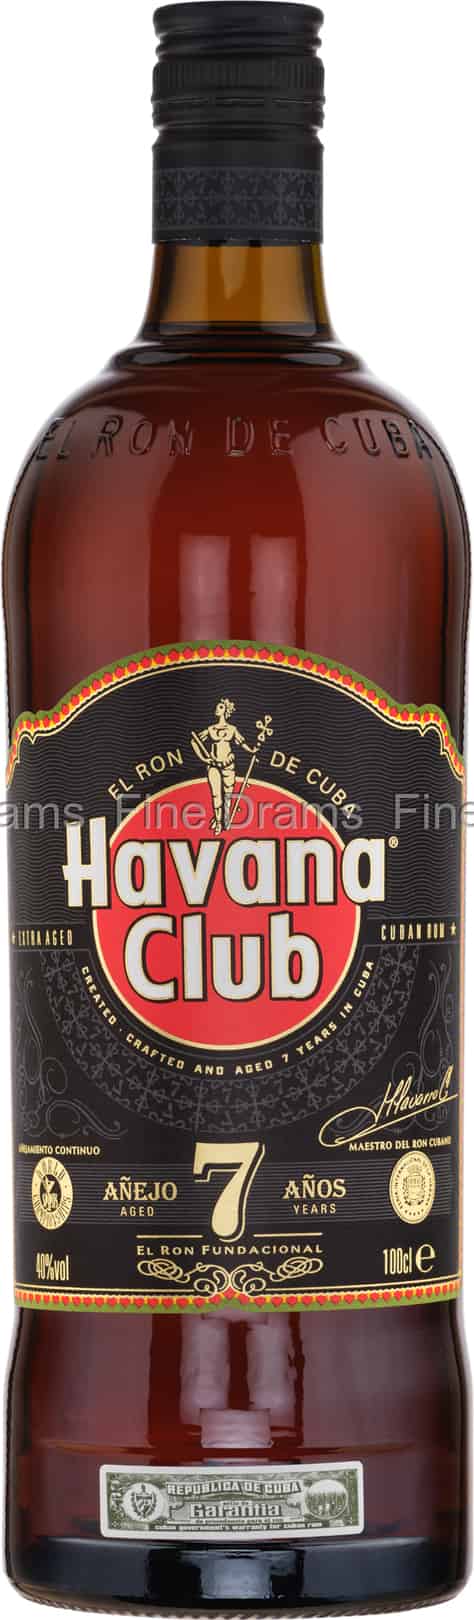 Havana Club 7 Year Old (1 Liter) Rum